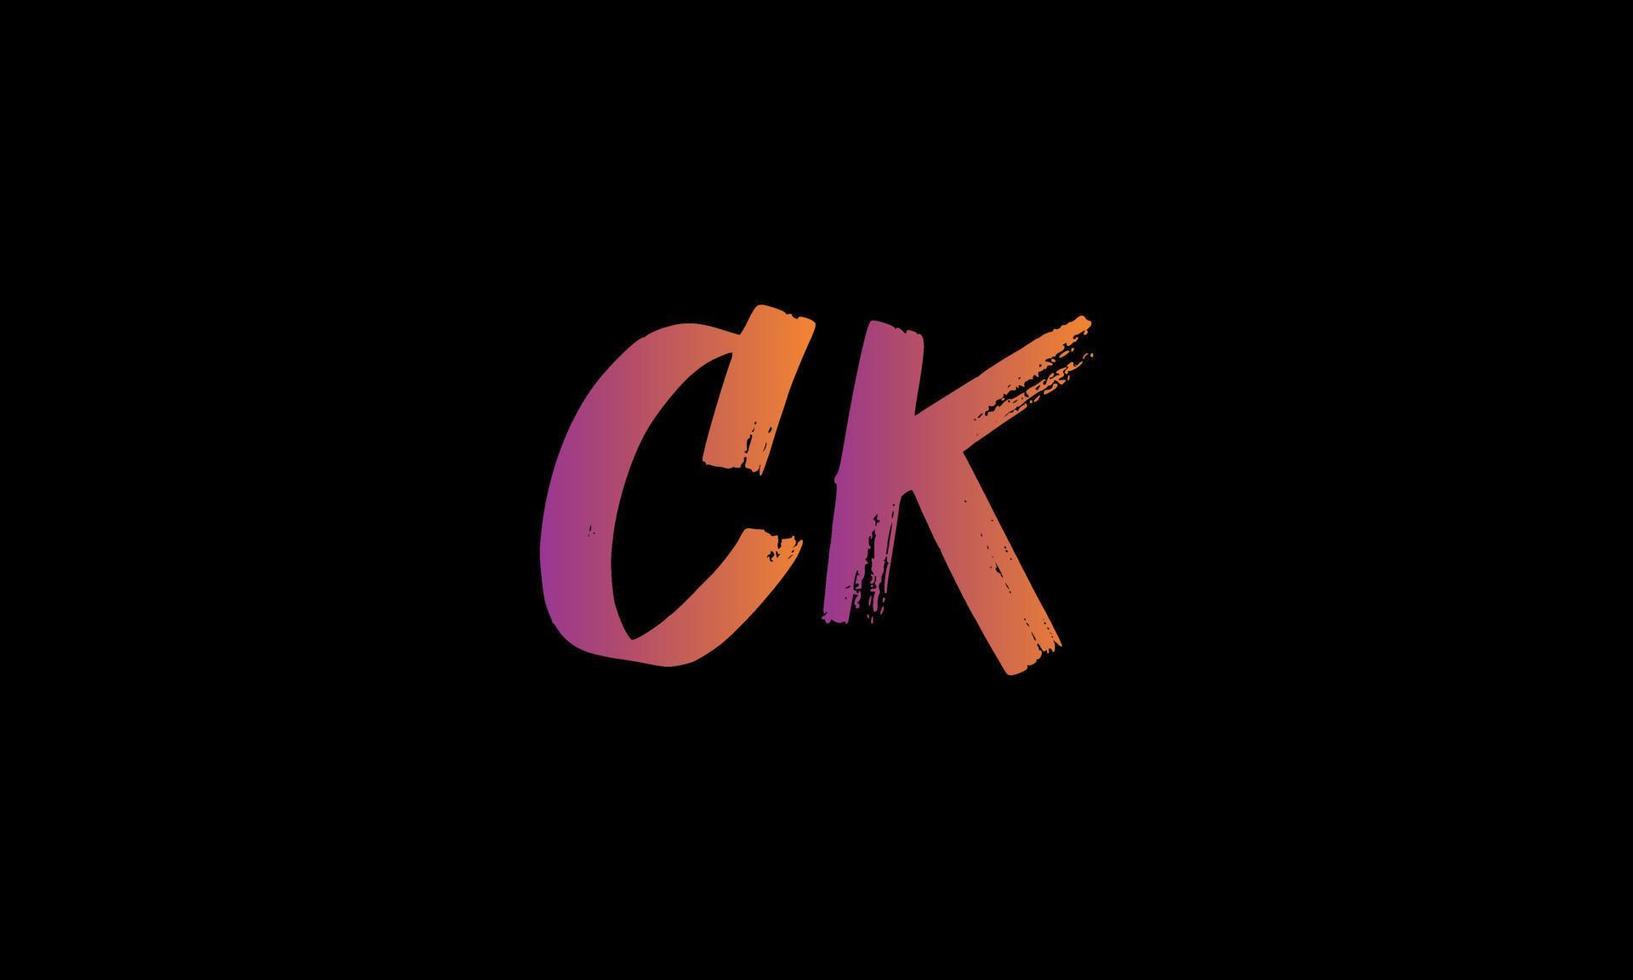 Initial Letter CK Logo. CK Brush Stock Letter Logo design Free vector template.